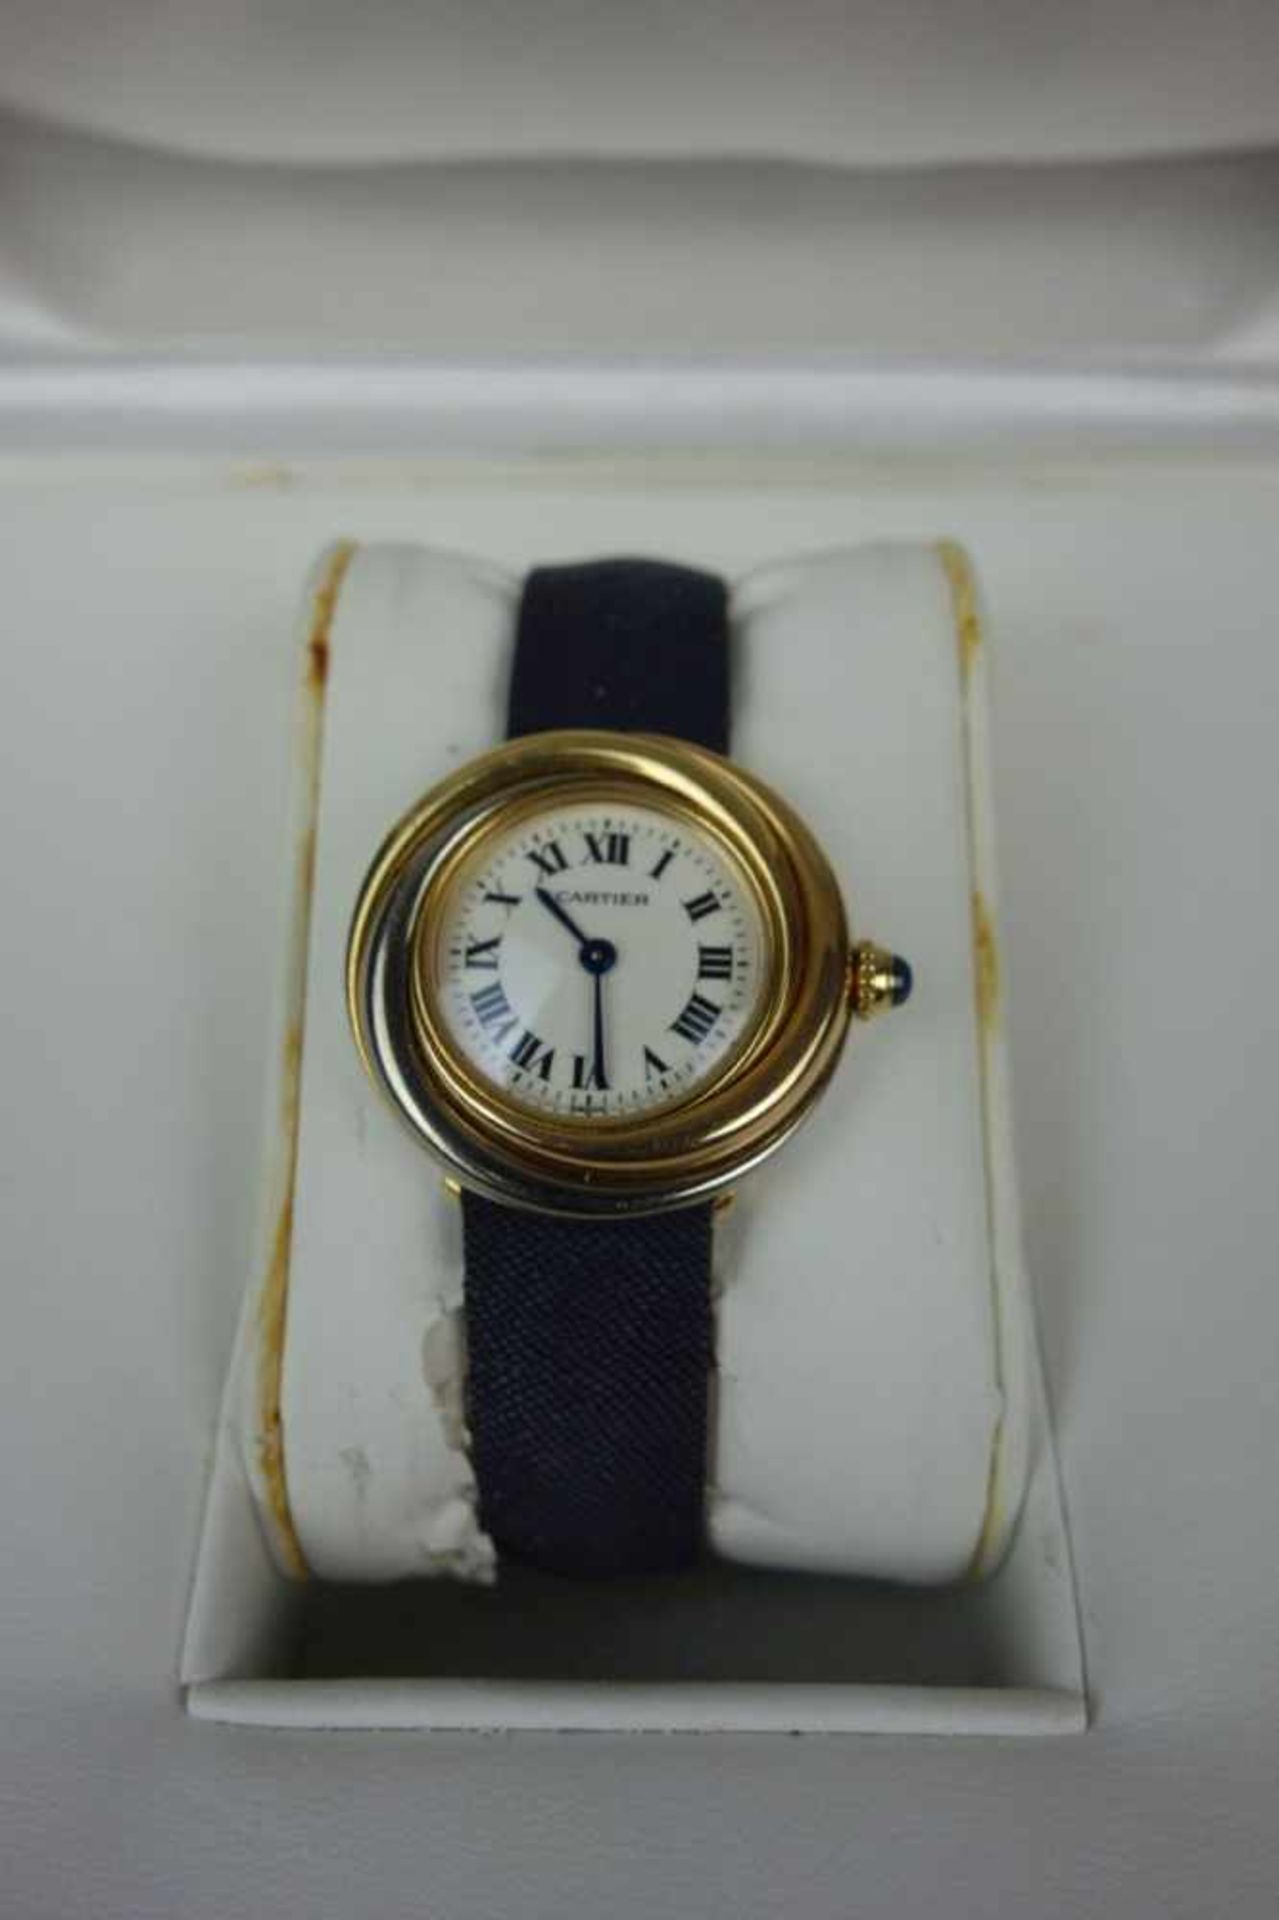 DAMEN ARMBANDUHR - CARTIER TRINITY / ladys wristwatch, Quartz-Uhr, 1998, Manufaktur Cartier / - Image 3 of 7